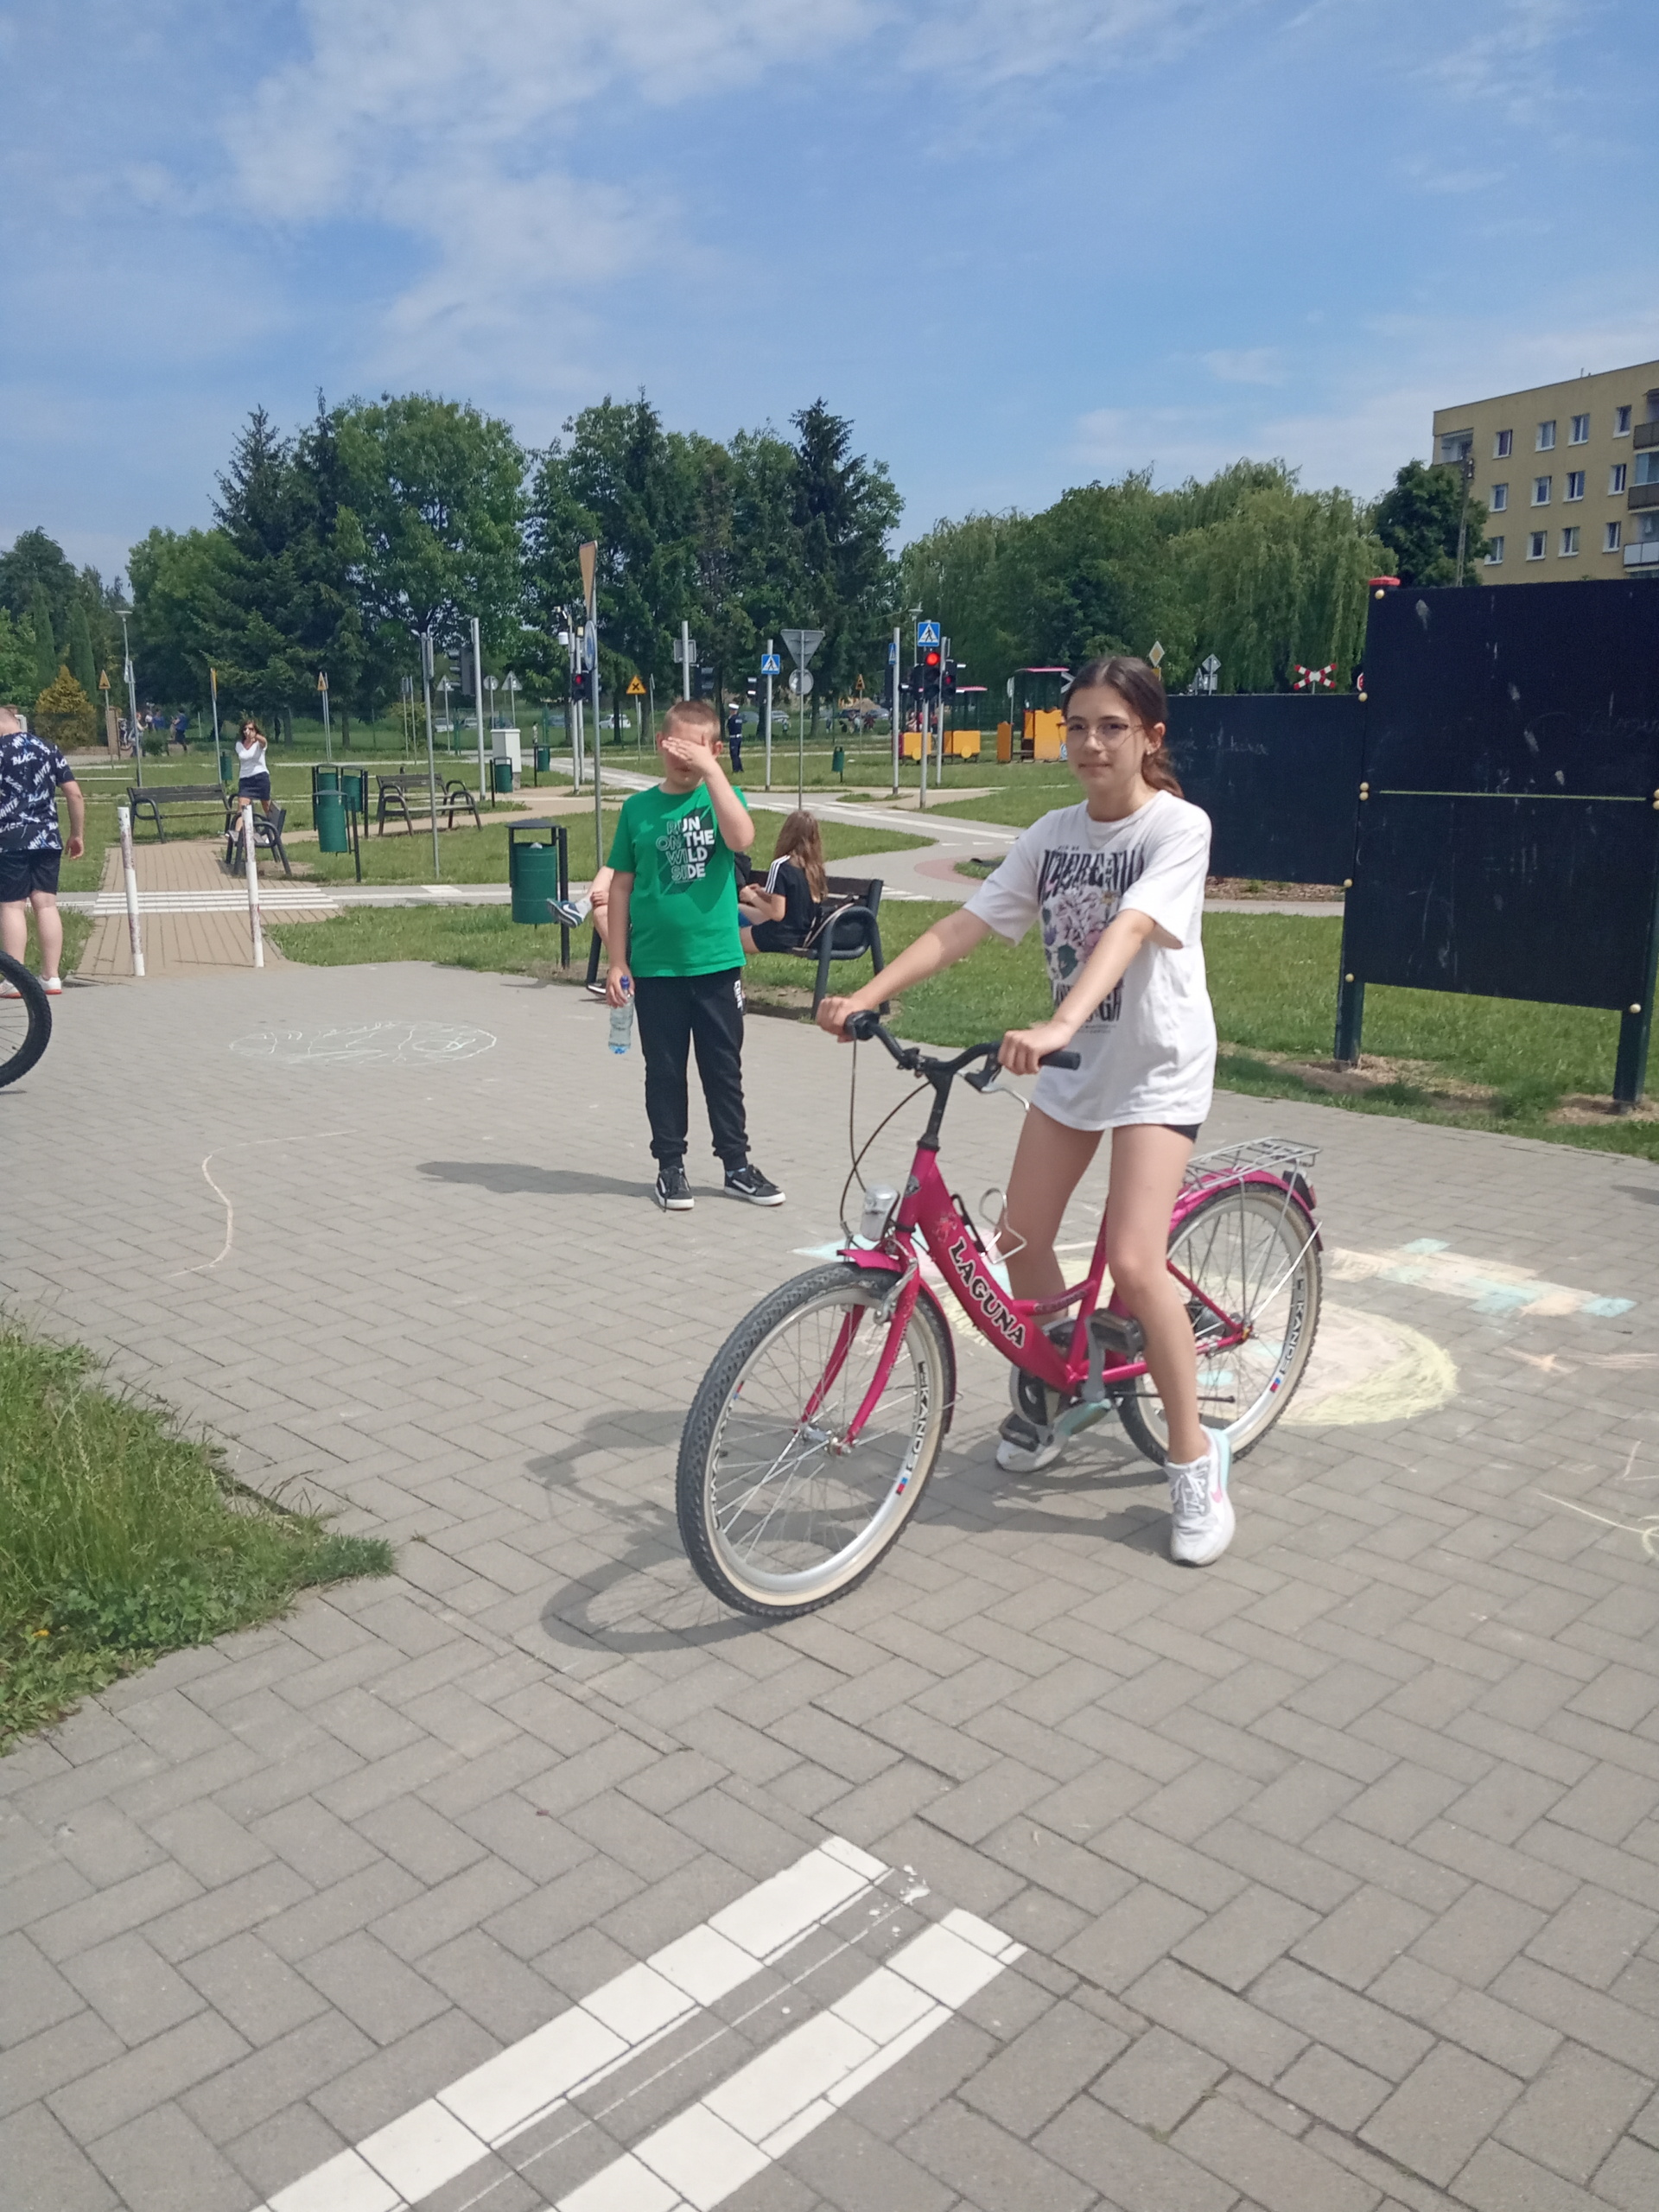 Uczennica przygotowuje się do jazdy rowerem po miasteczku rowerowym.